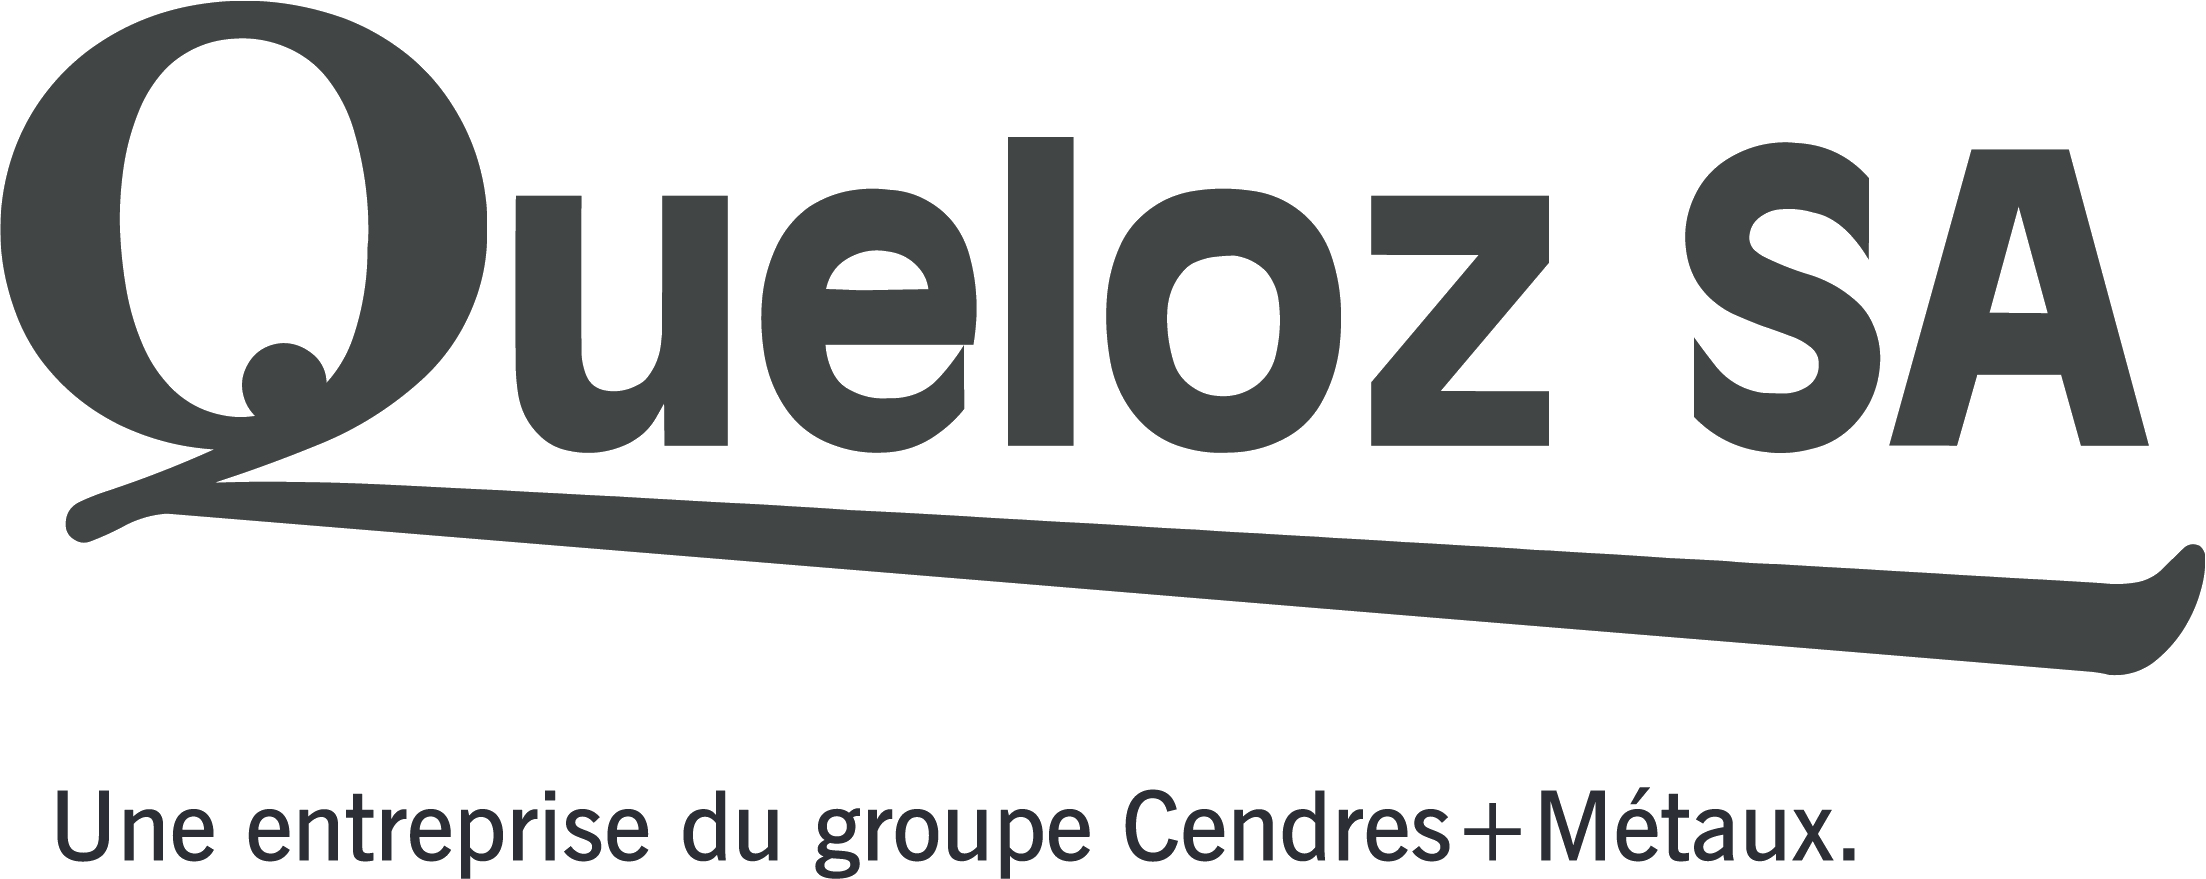 Queloz SA, une entreprise du groupe Cendres + Métaux